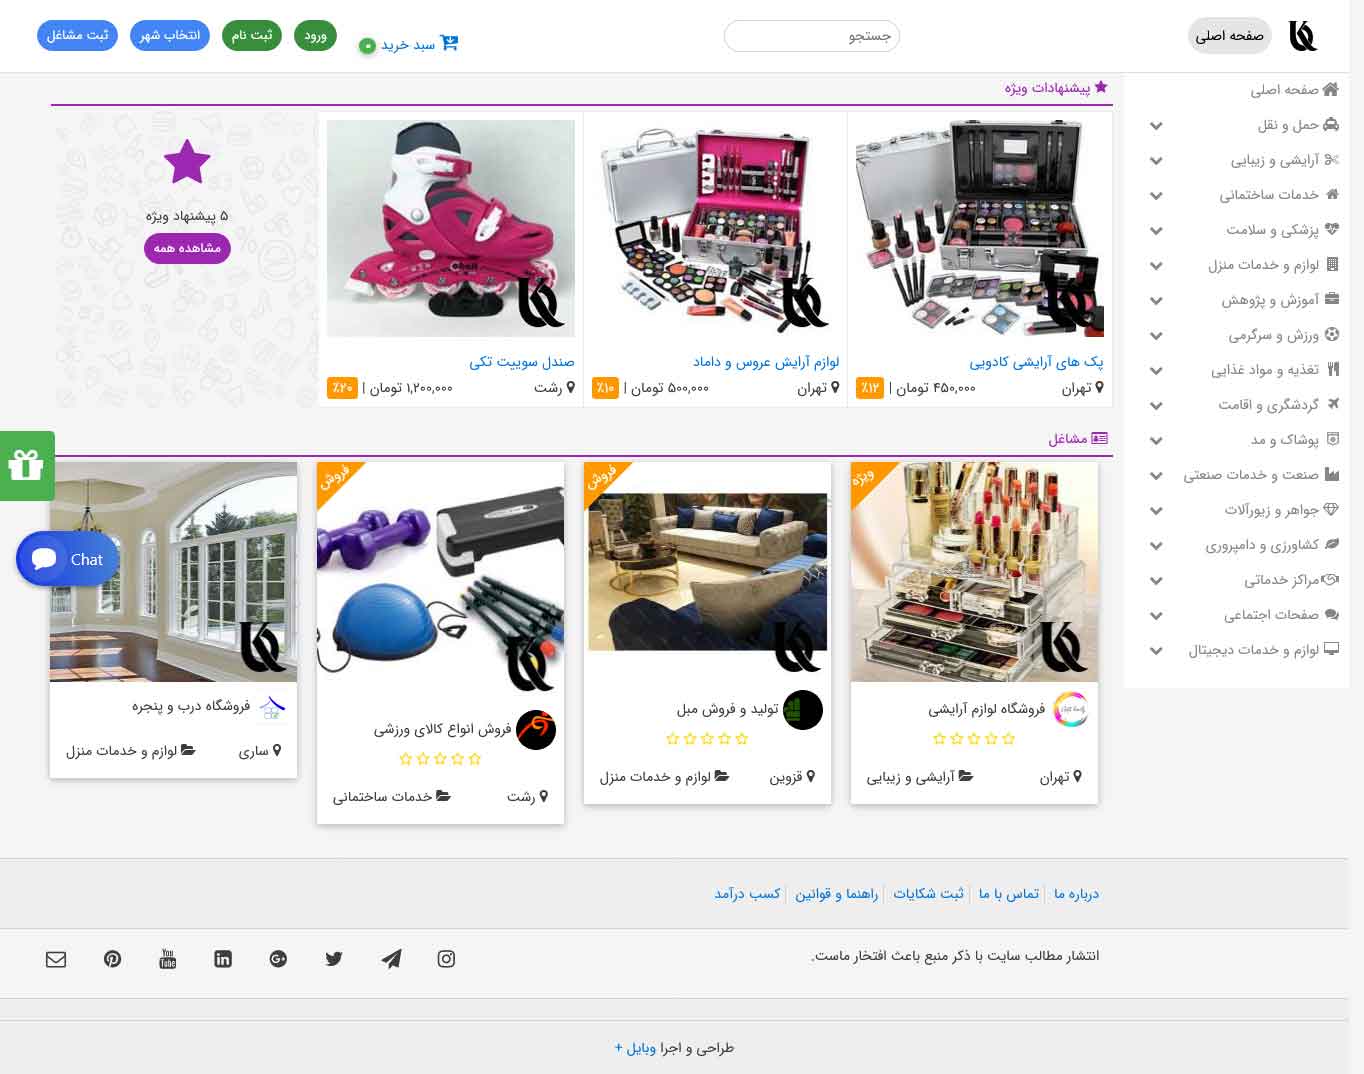 وبسایت معرفی و امکان ایجاد فروشگاه محصولات برای مشاغل